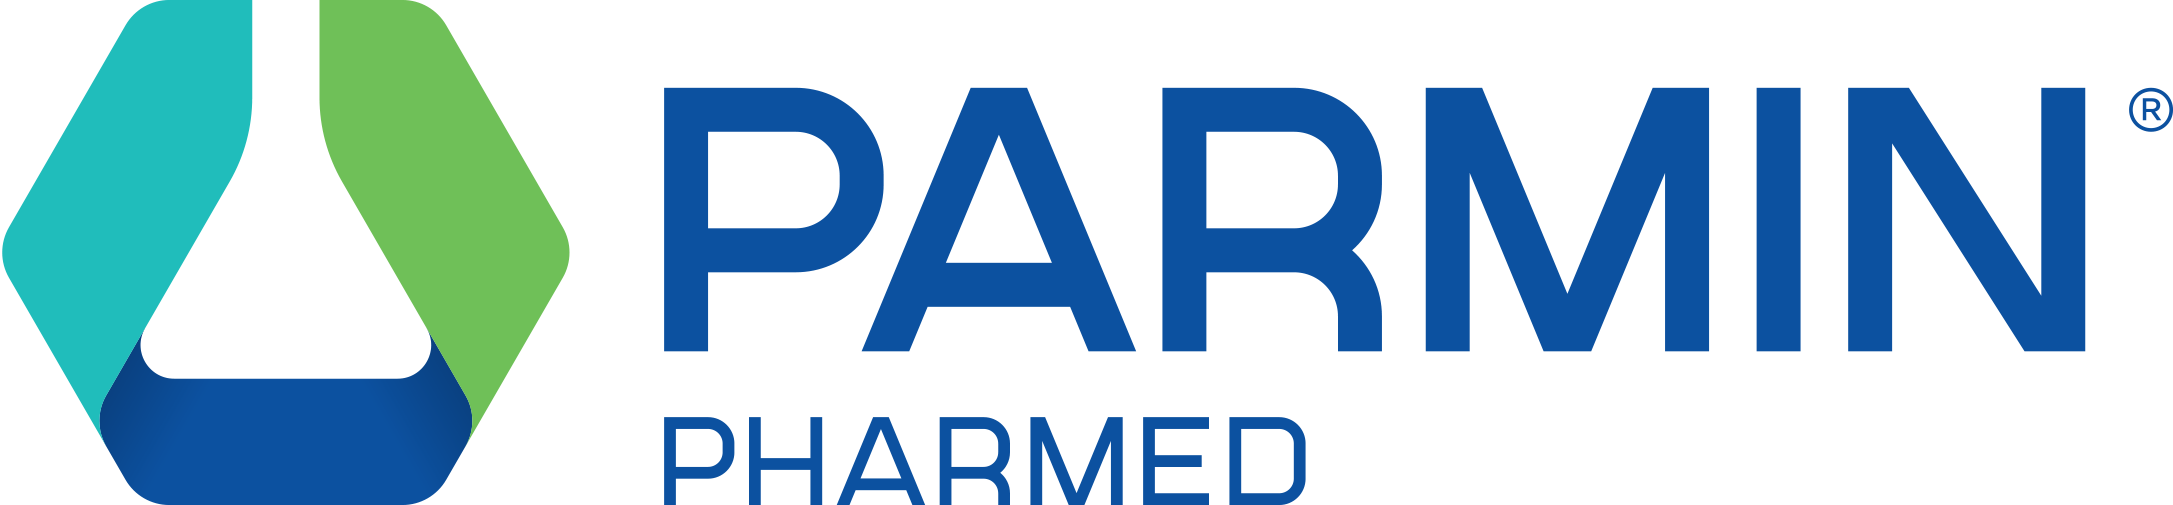 Parmin Pharmed logo